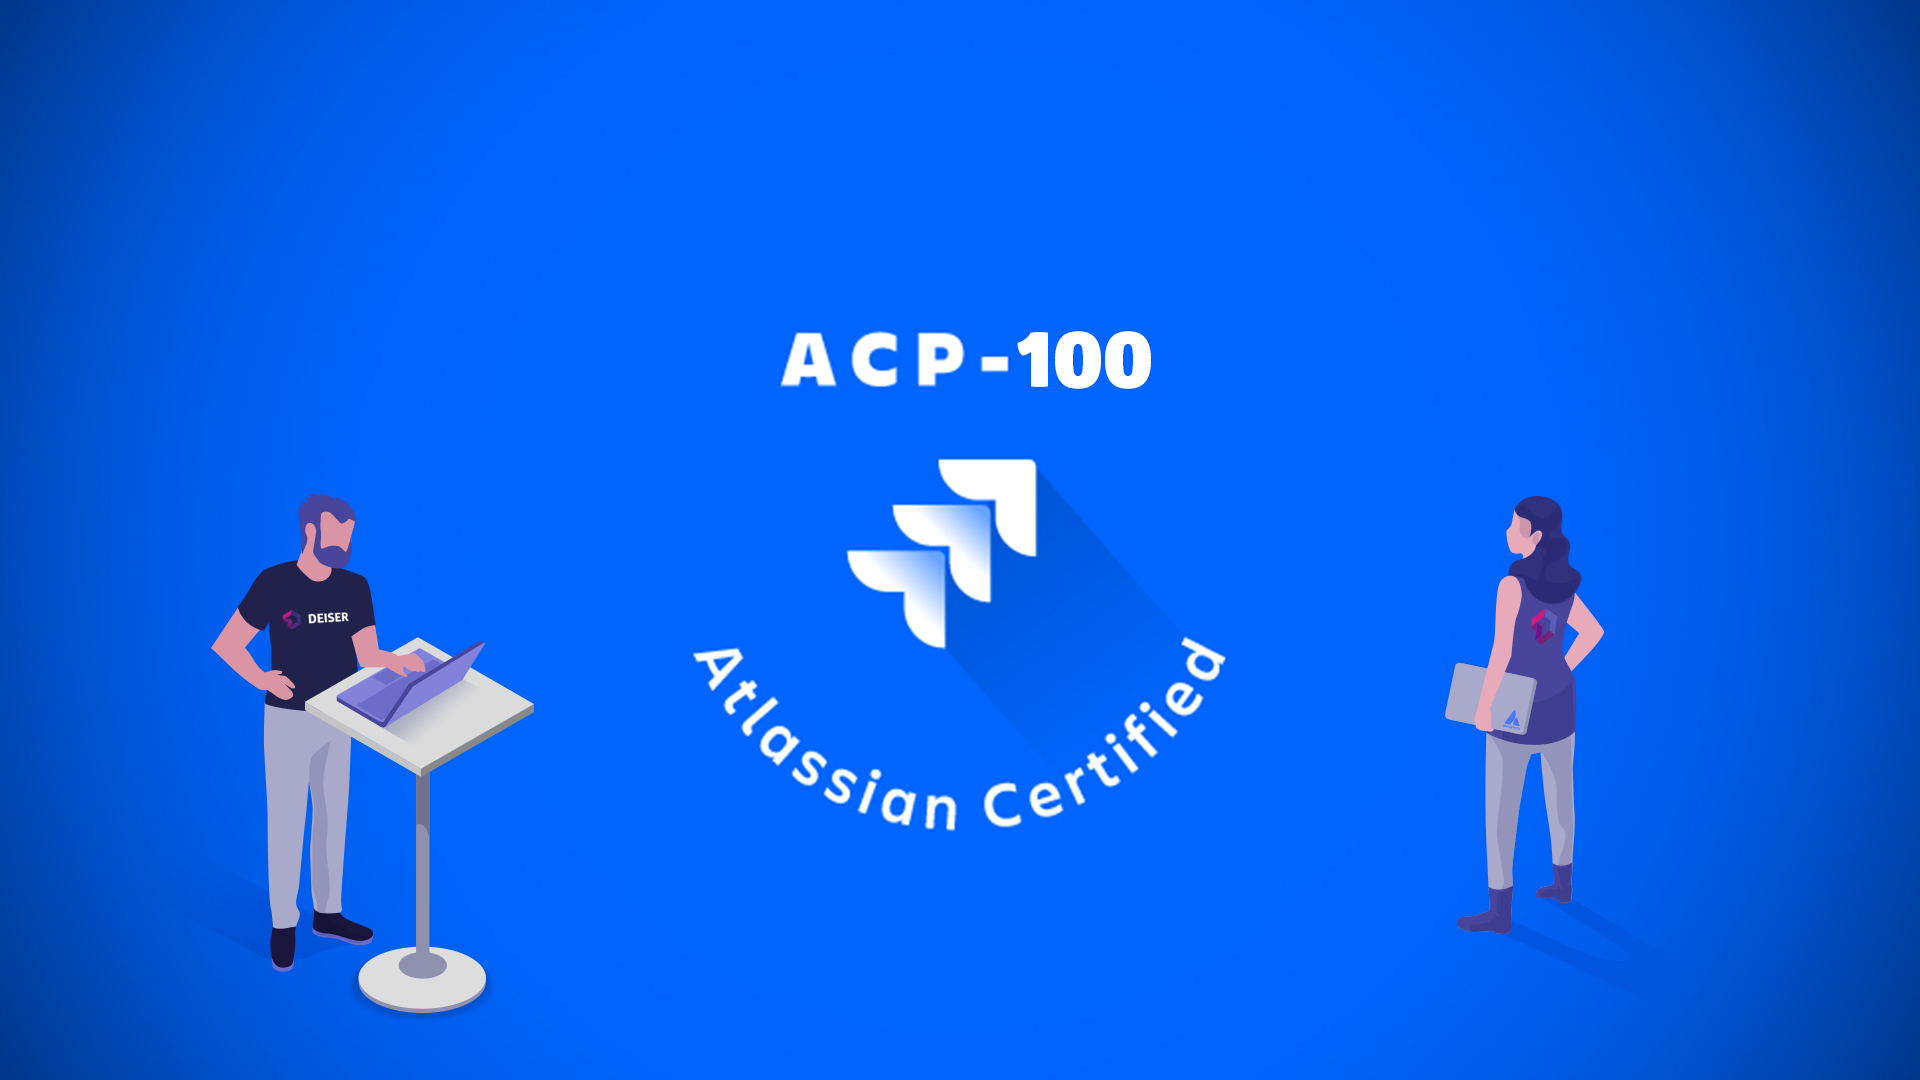 ACP-120 Examsfragen